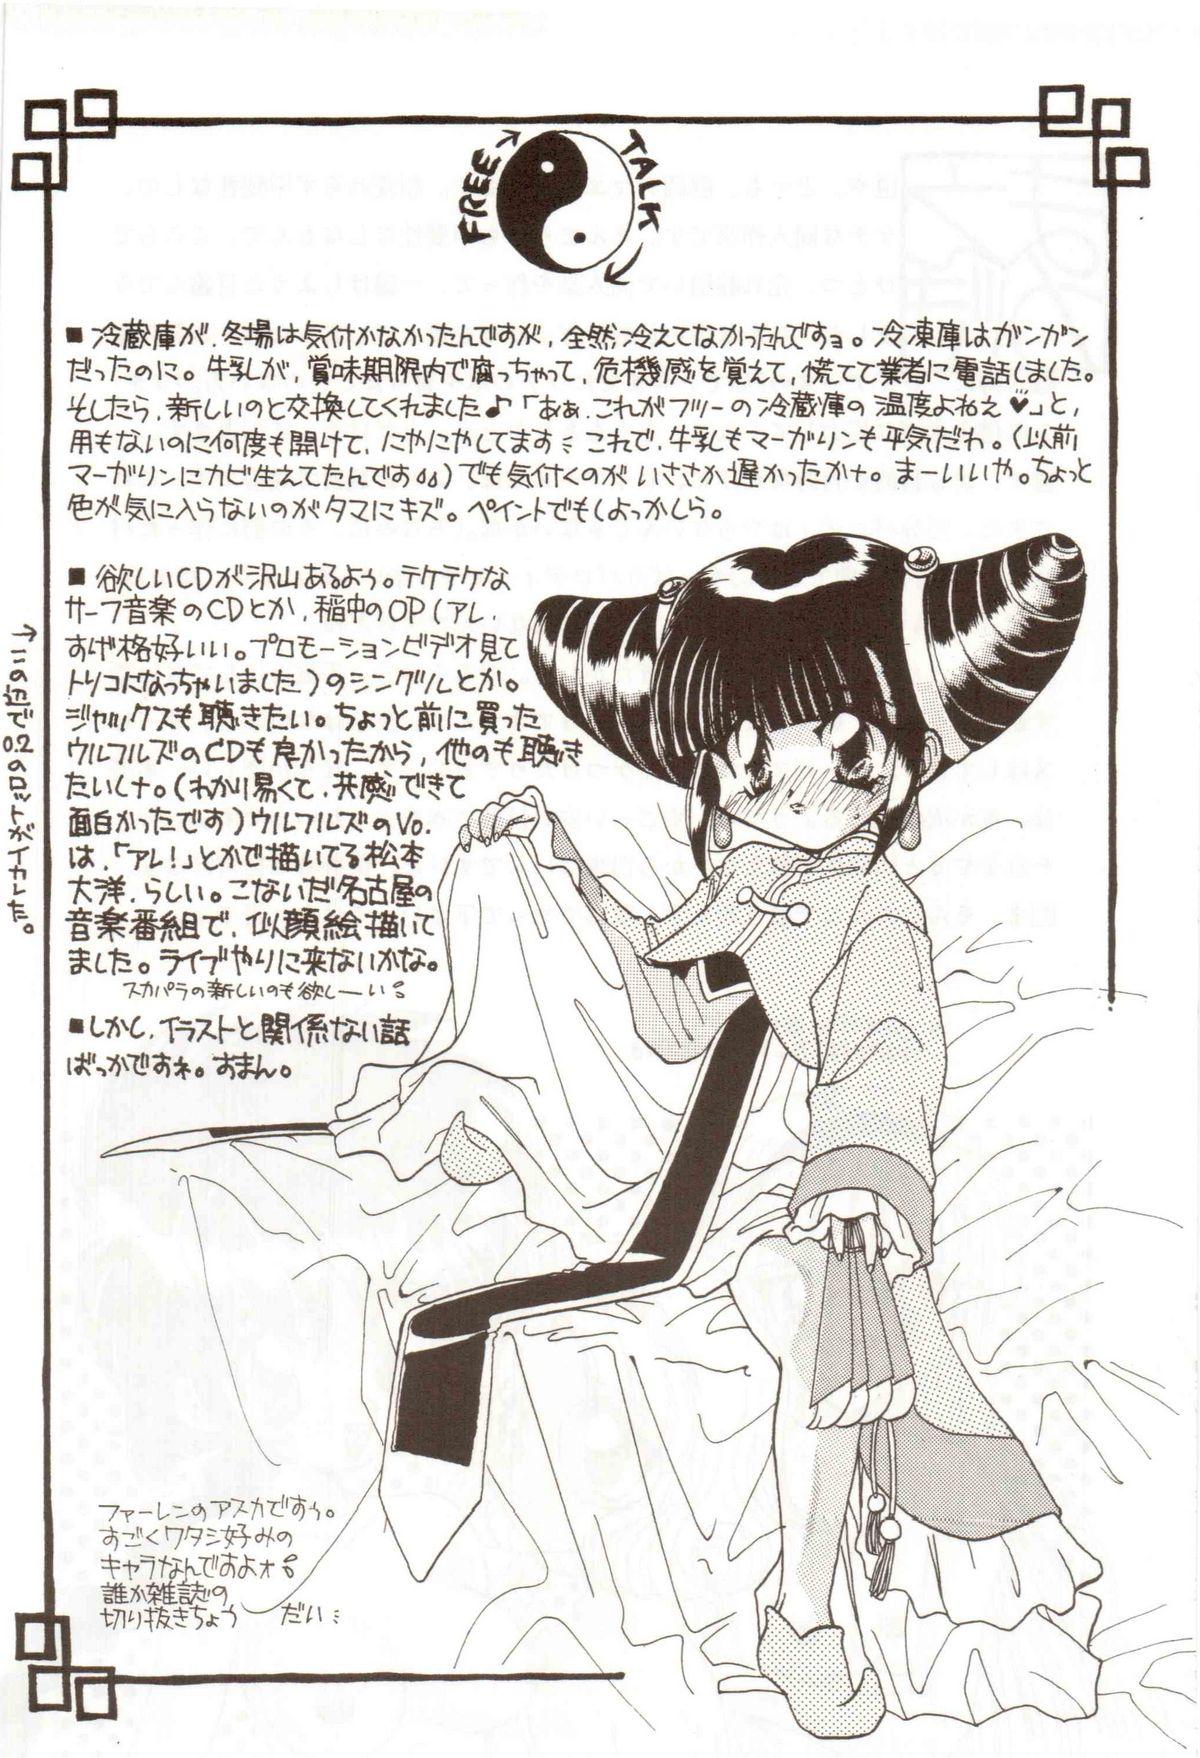 Hairy Bakuhatsu On Parade - Magic knight rayearth Novinha - Page 5